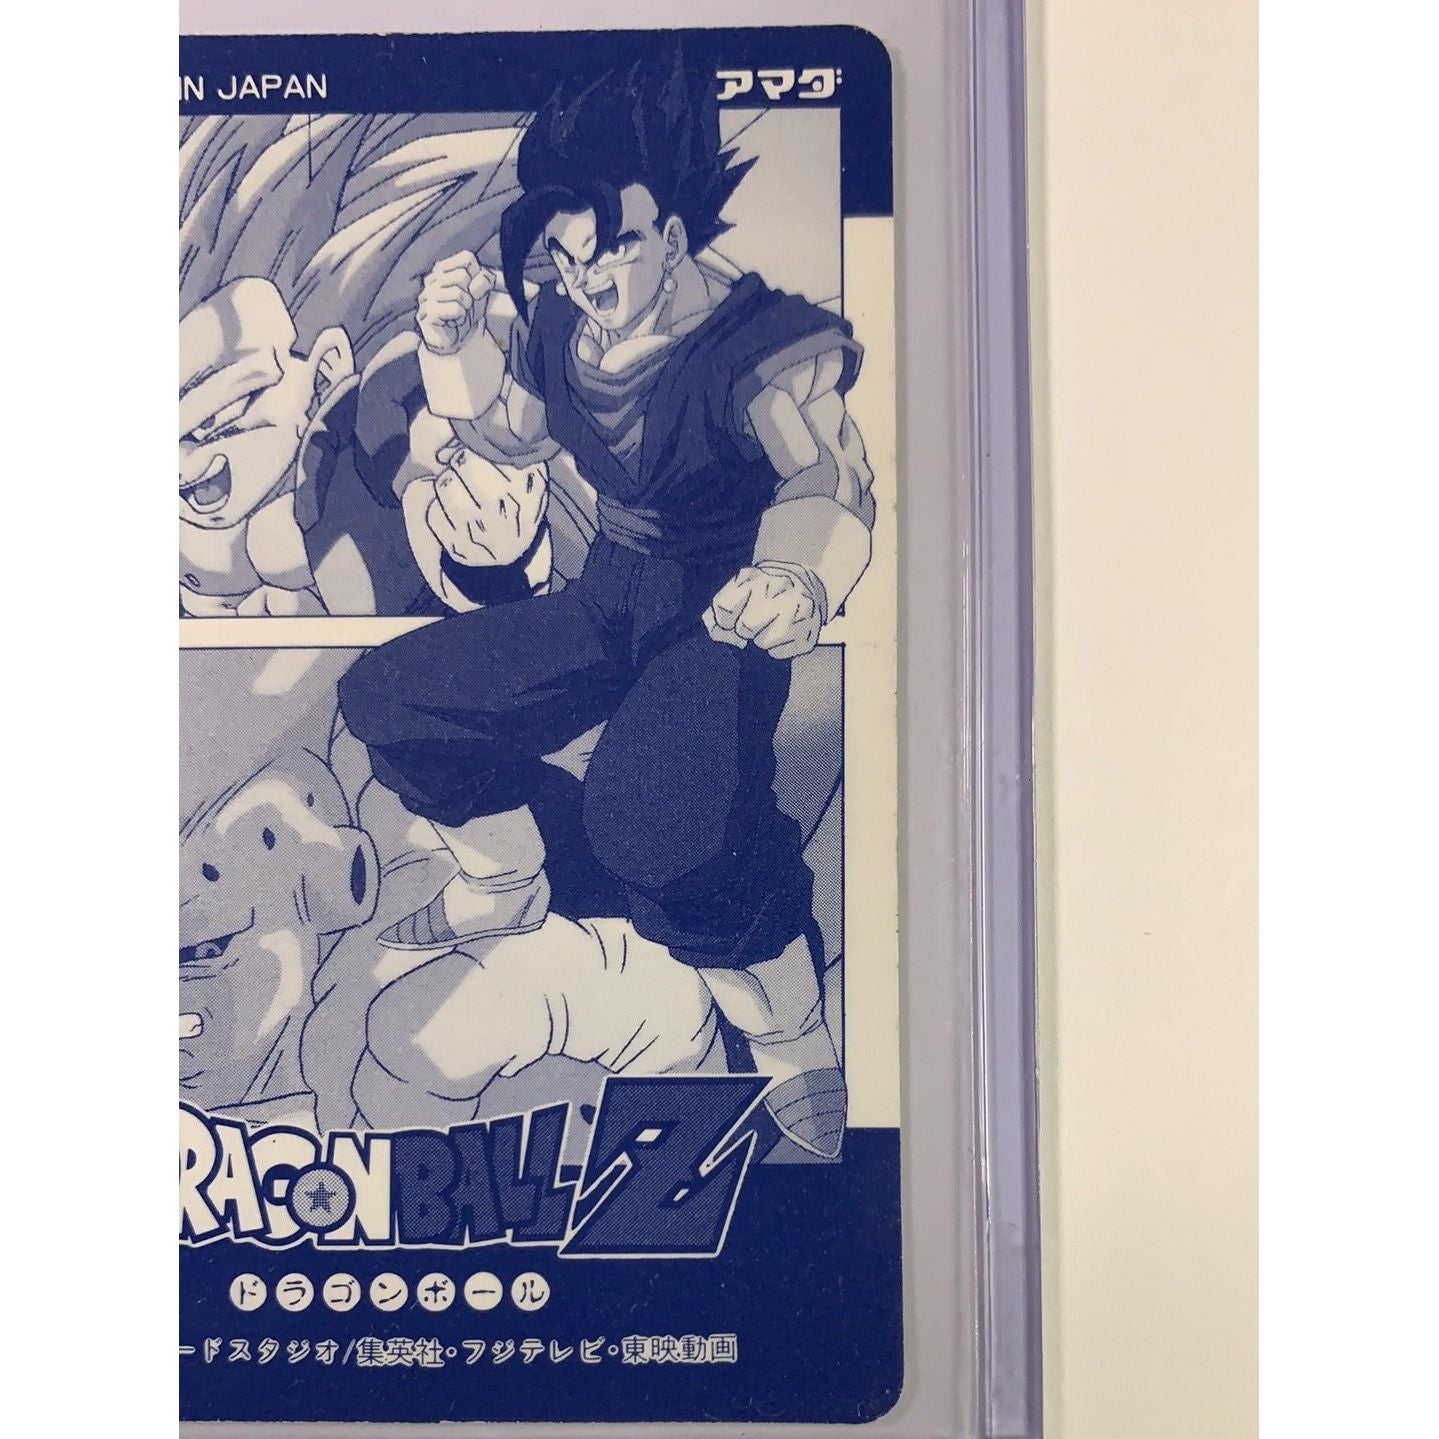  1995 Carte Platina Hero Collection Dragon Ball Z Silver Foil Holo Super Saiyan Goku  Local Legends Cards & Collectibles